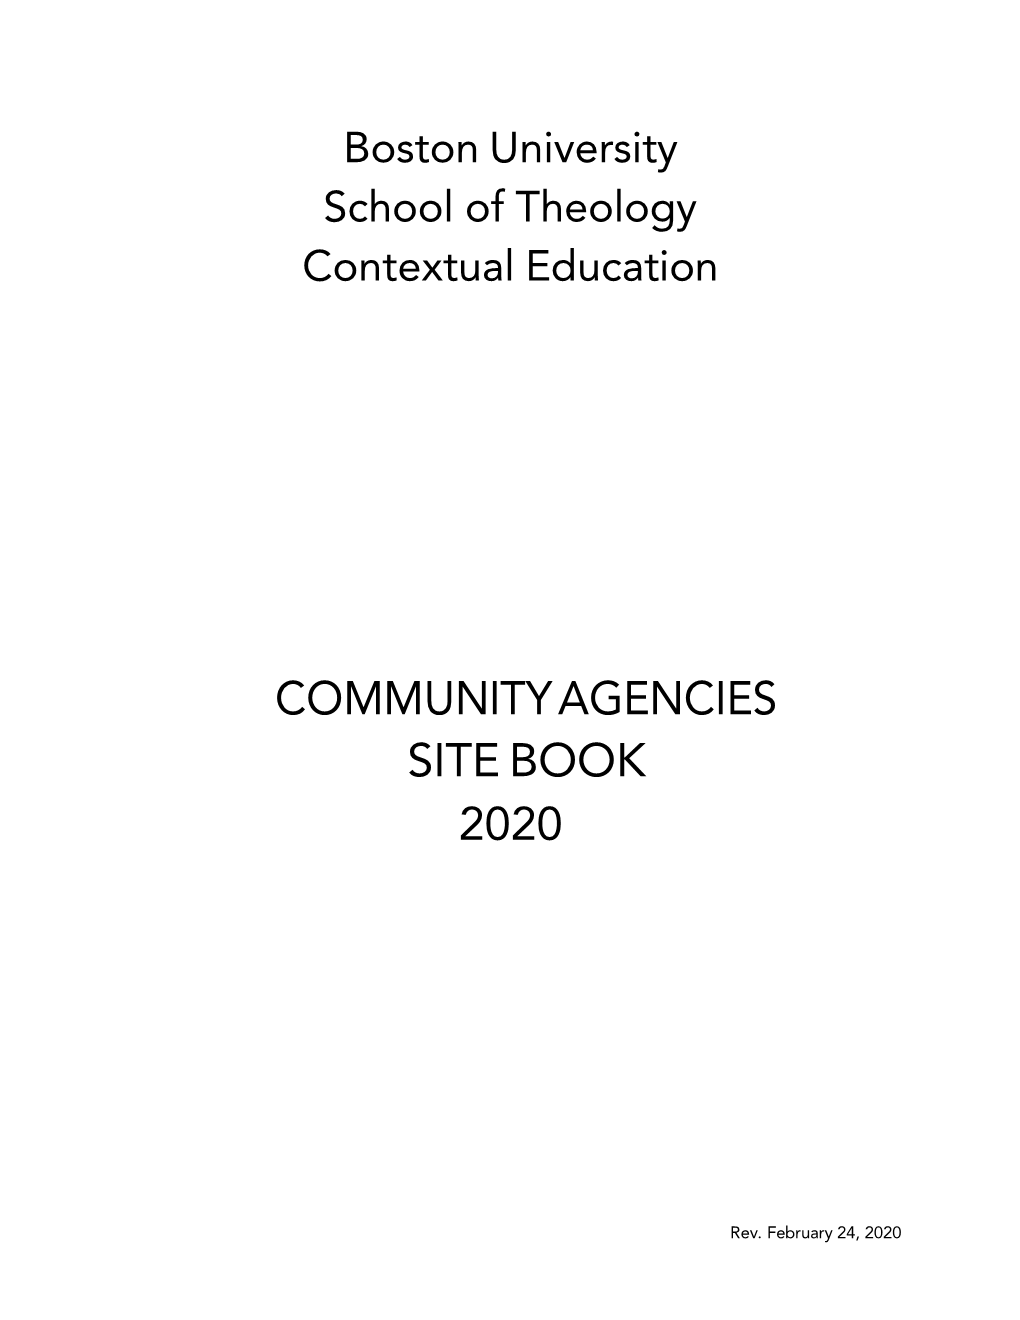 Communityagencies Site Book 2020